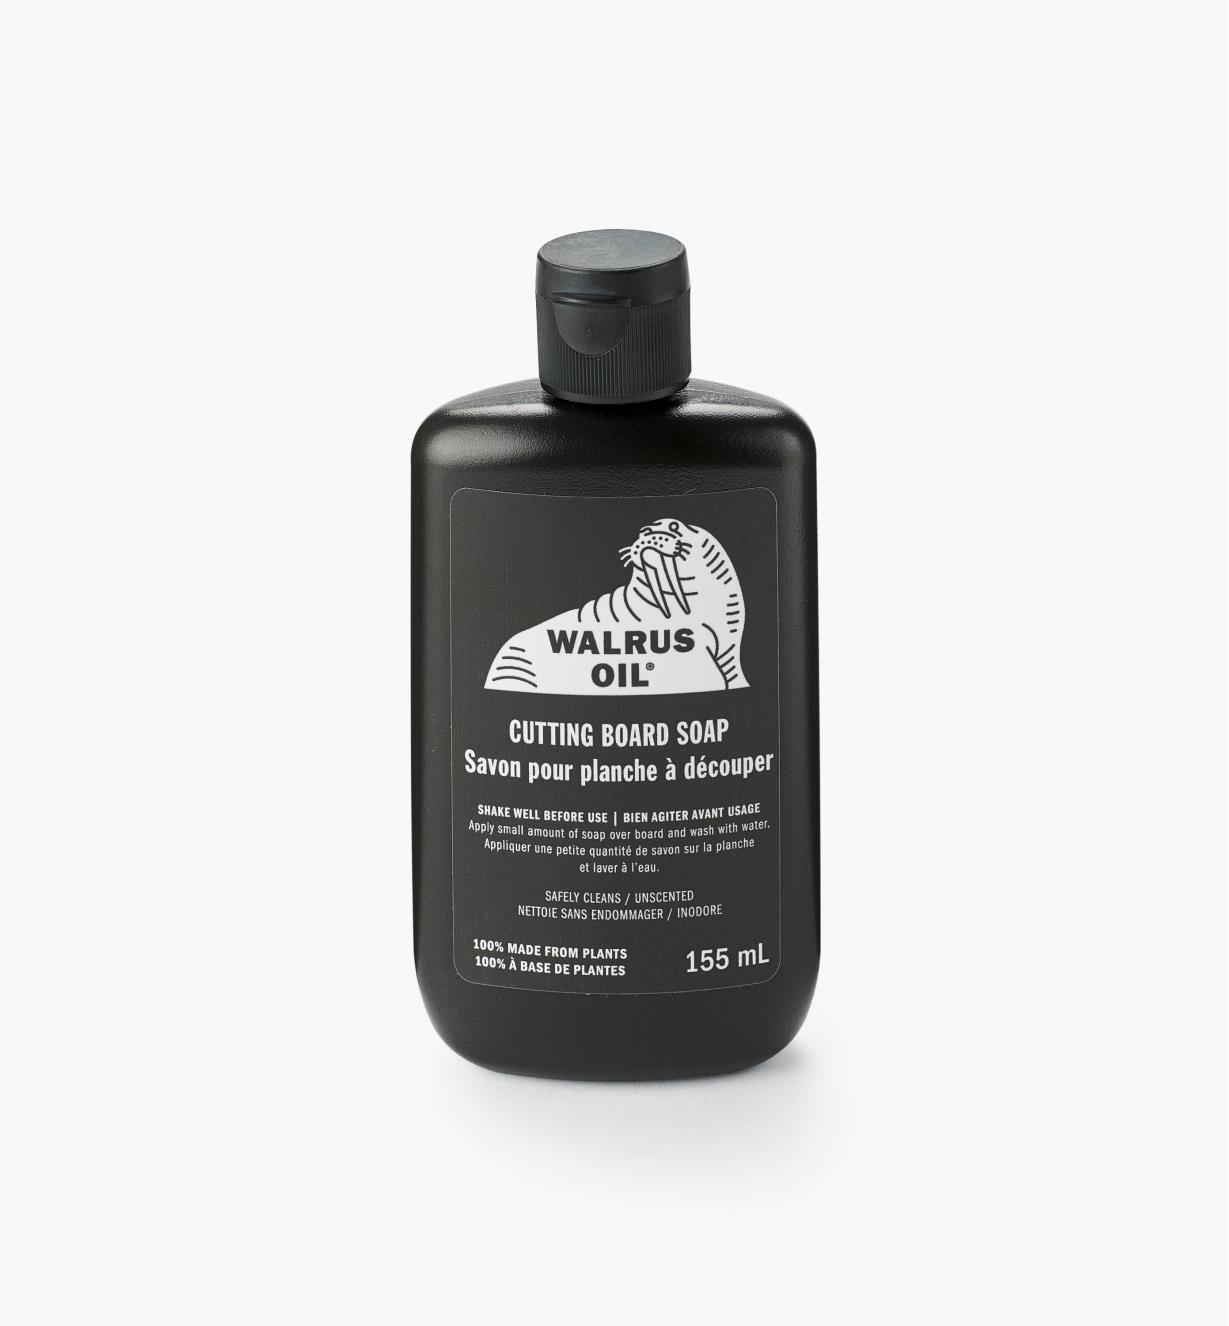 27K2905 - Savon pour planche à découper Walrus Oil, 5,25 oz (155 ml)